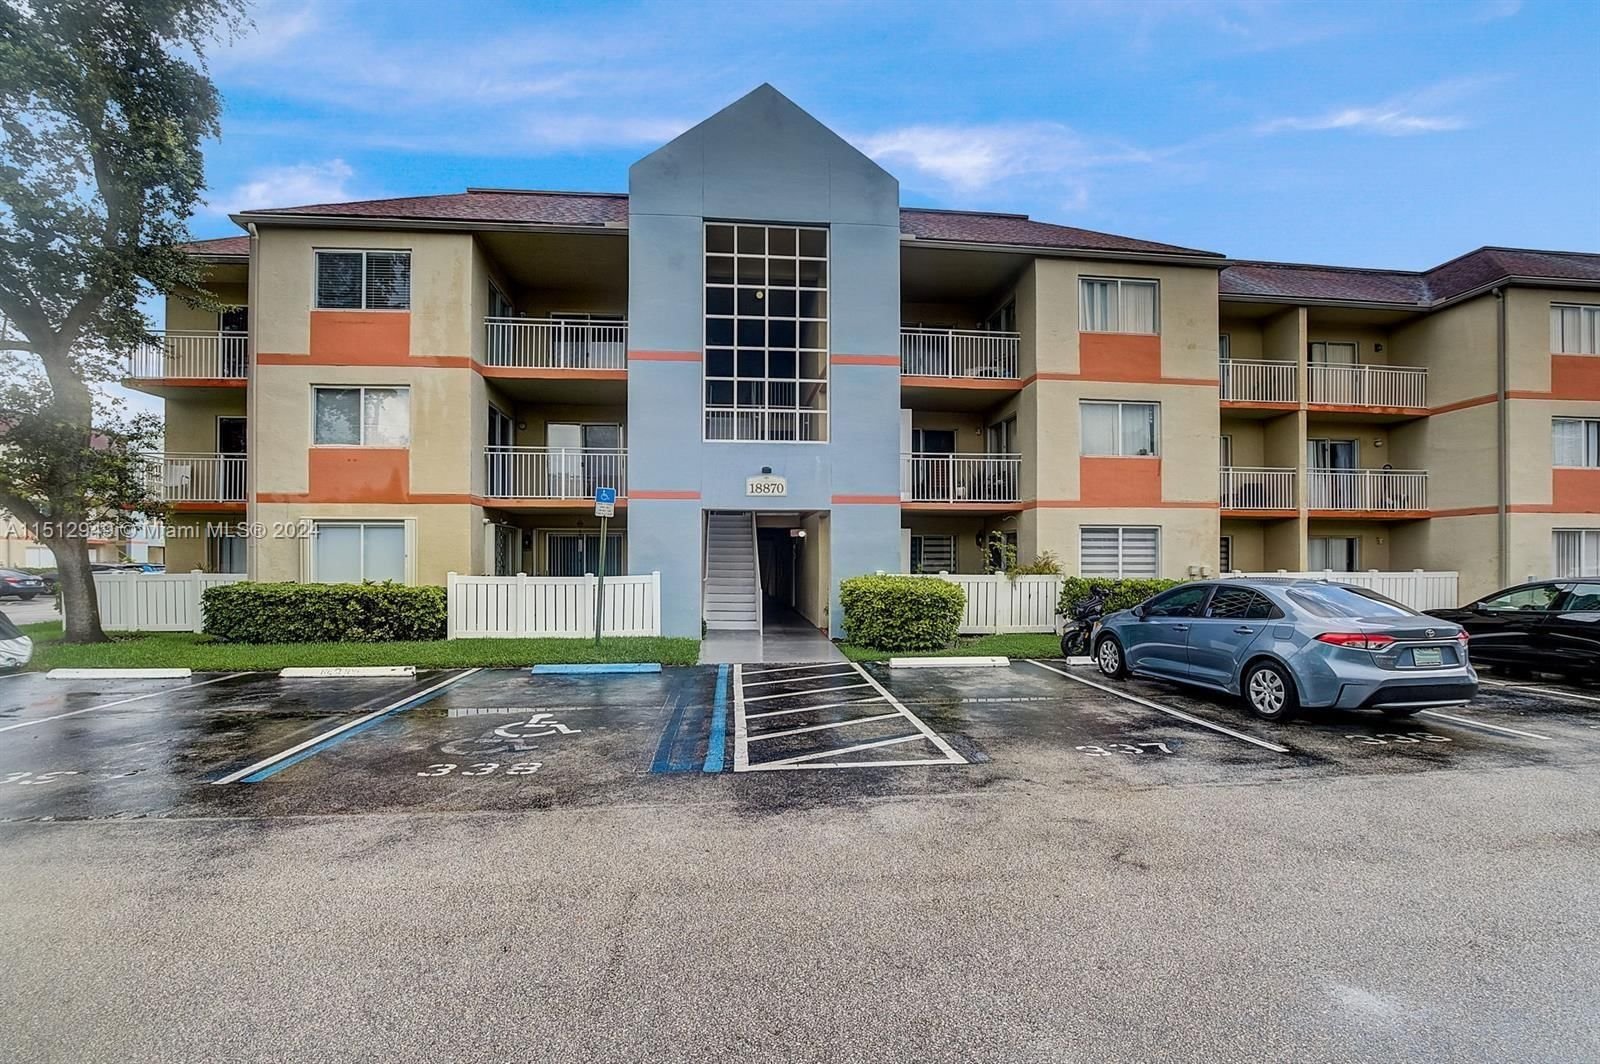 Real estate property located at 18870 57th Ave #201, Miami-Dade County, VILLA RUSTICA I CONDO, Hialeah, FL